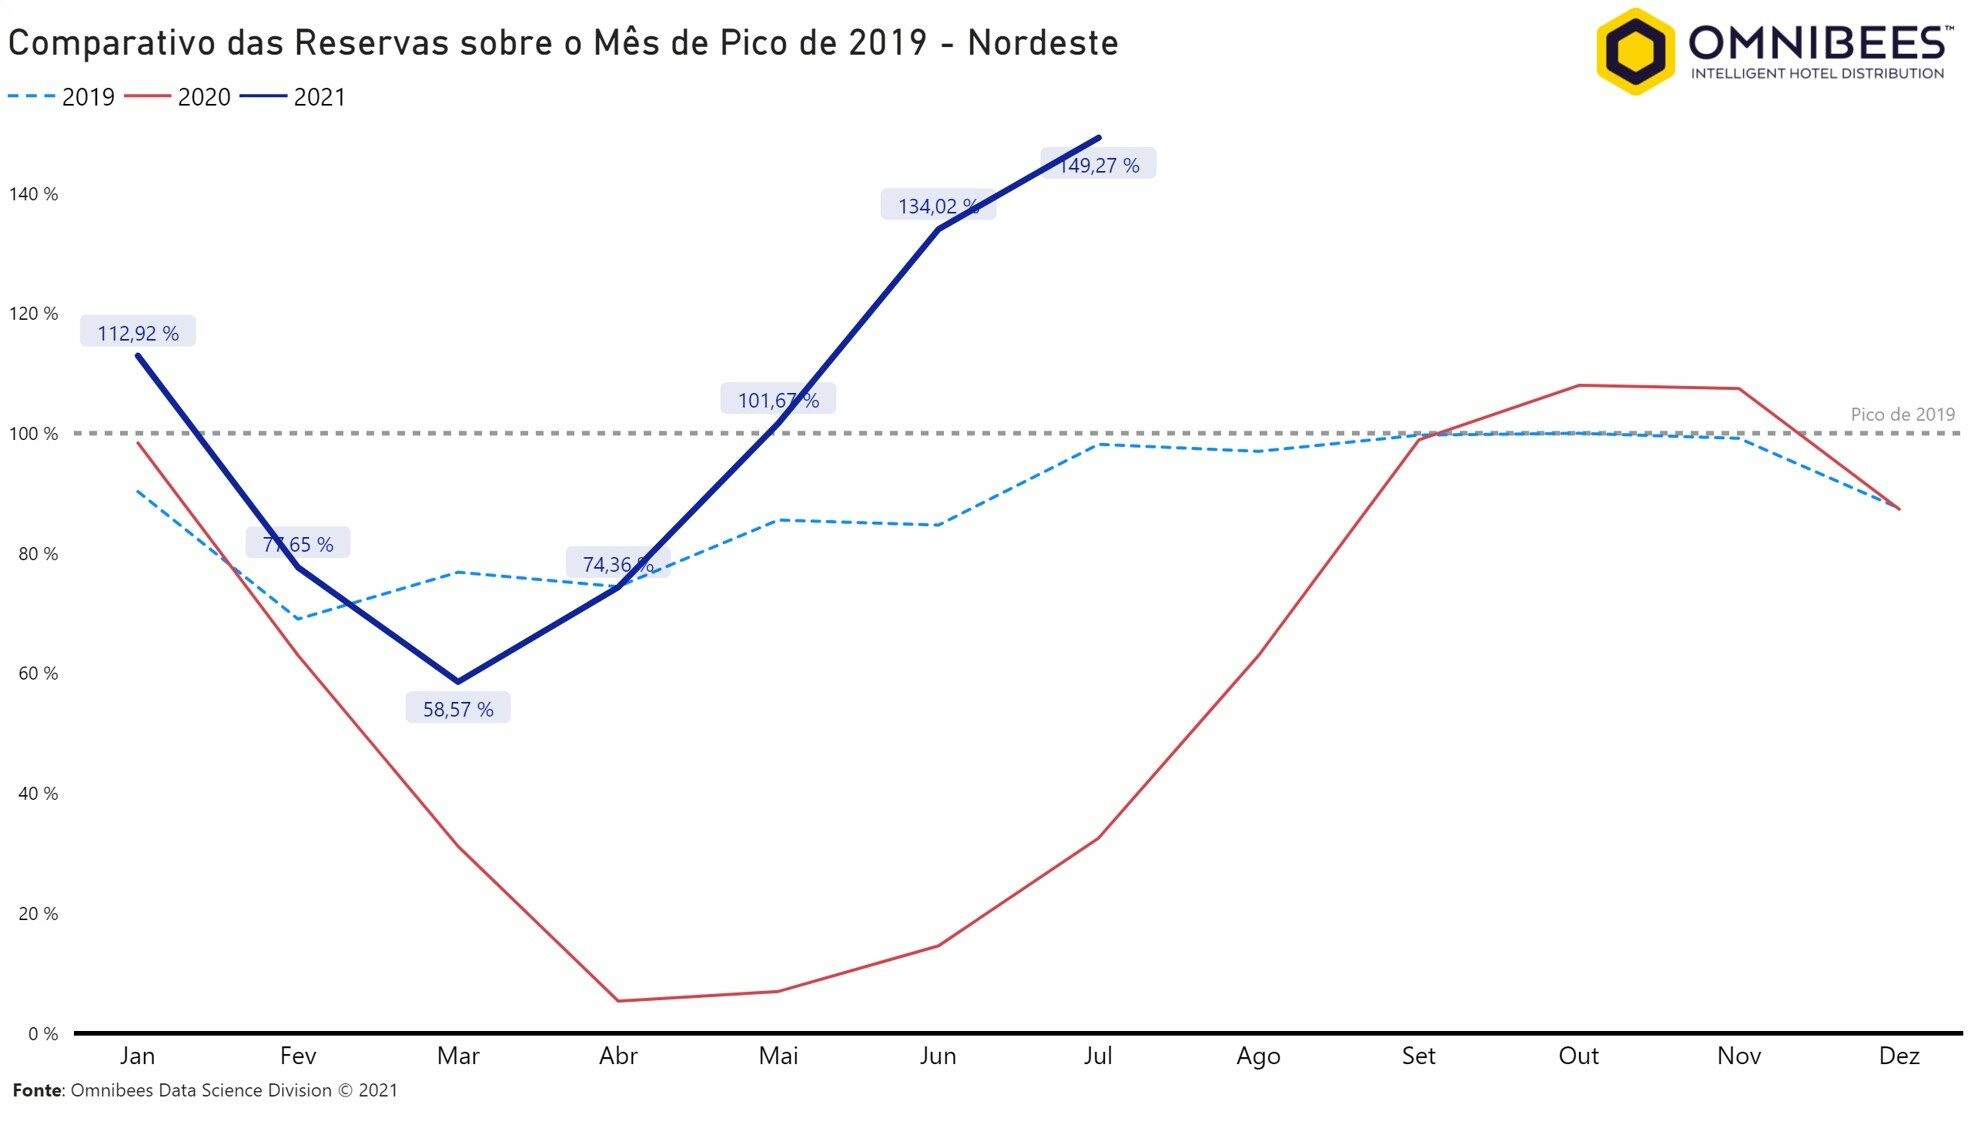 Gráfico 3 mostra Nordeste disparando nas vendas de julho